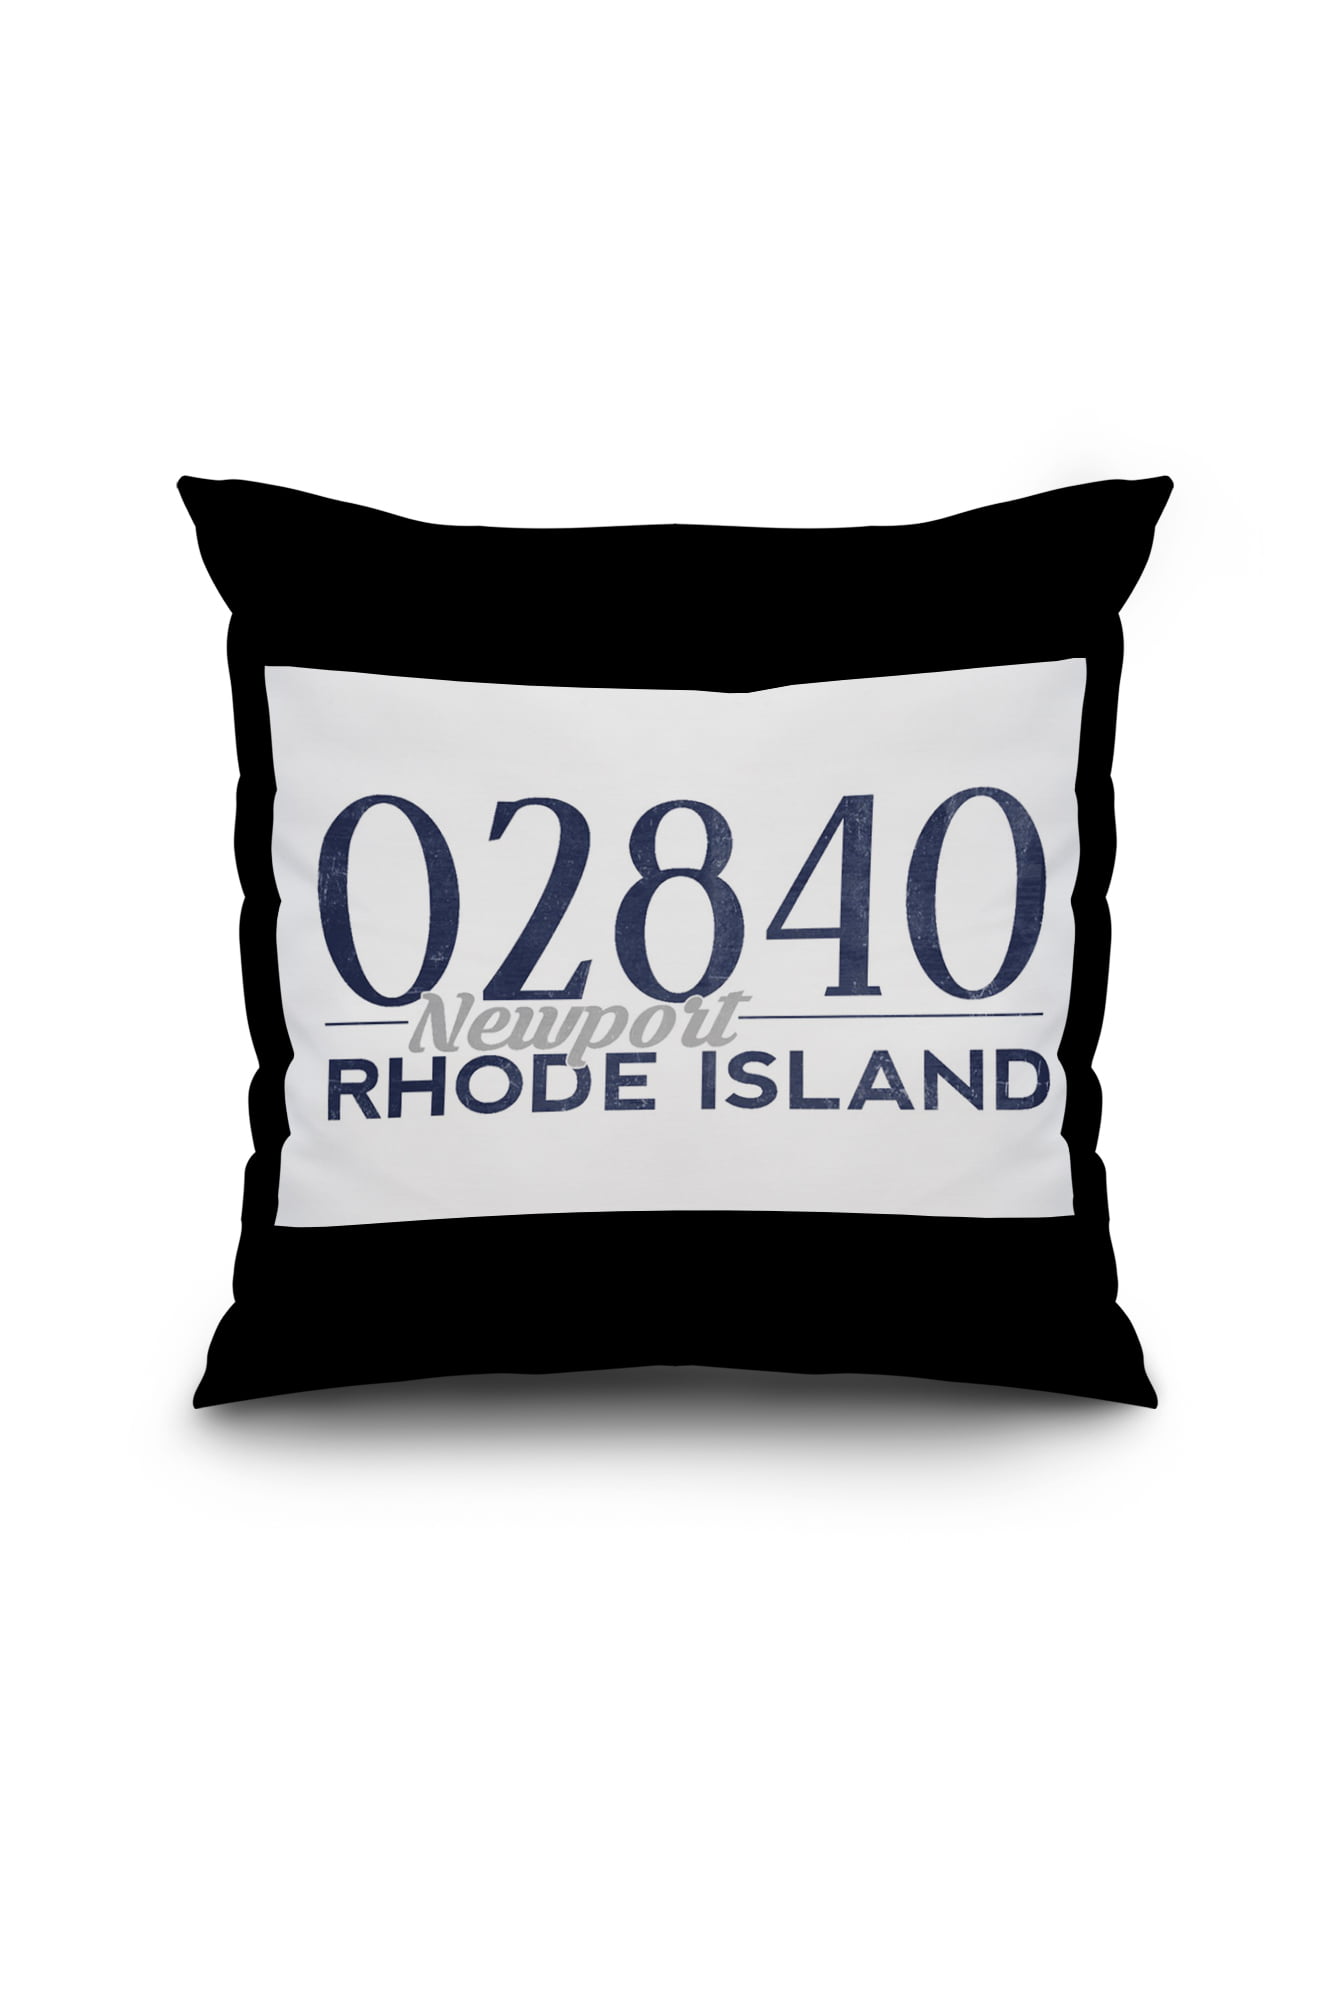 Newport, Rhode Island - 02840 Zip Code (Blue) - Lantern Press Artwork (18x18 Spun Polyester ...